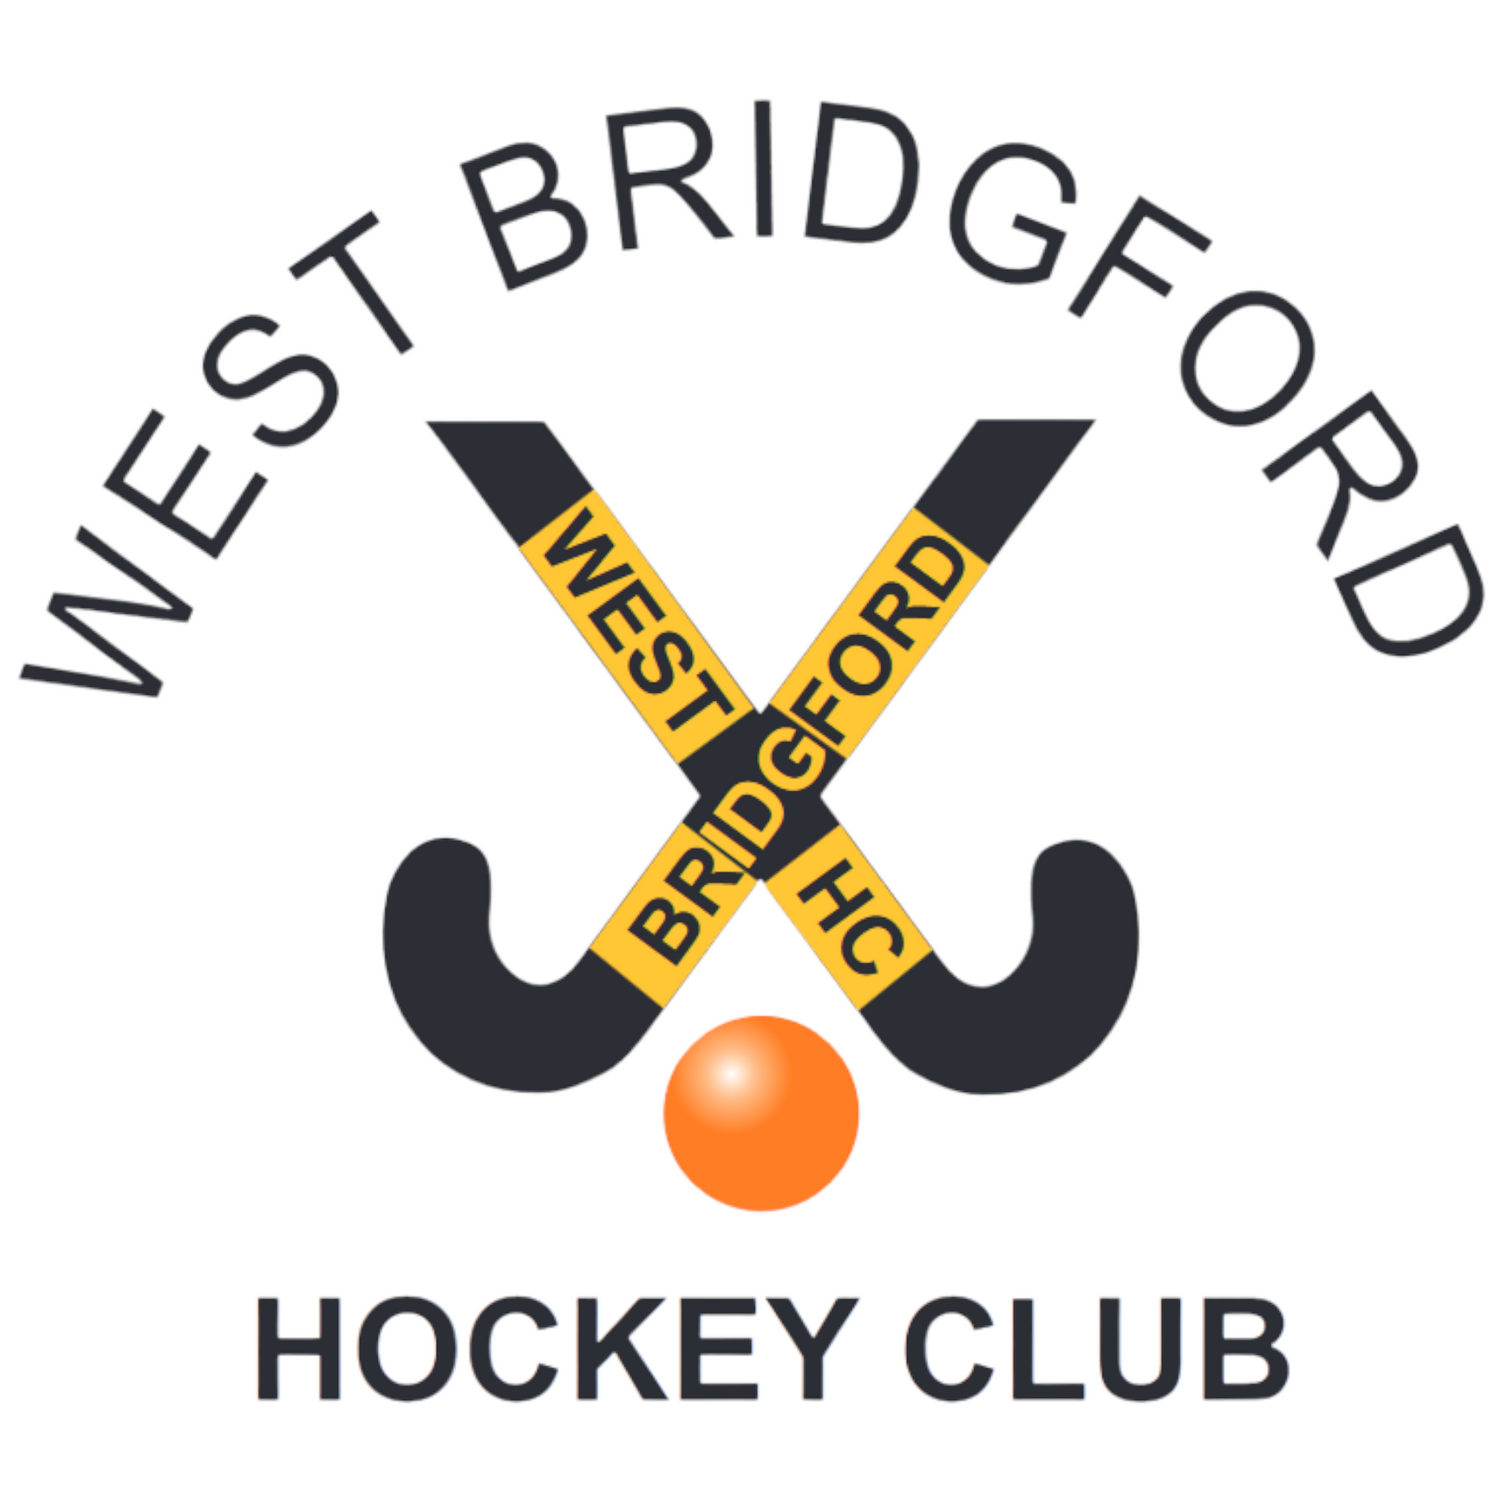 West Bridgford Hockey Club